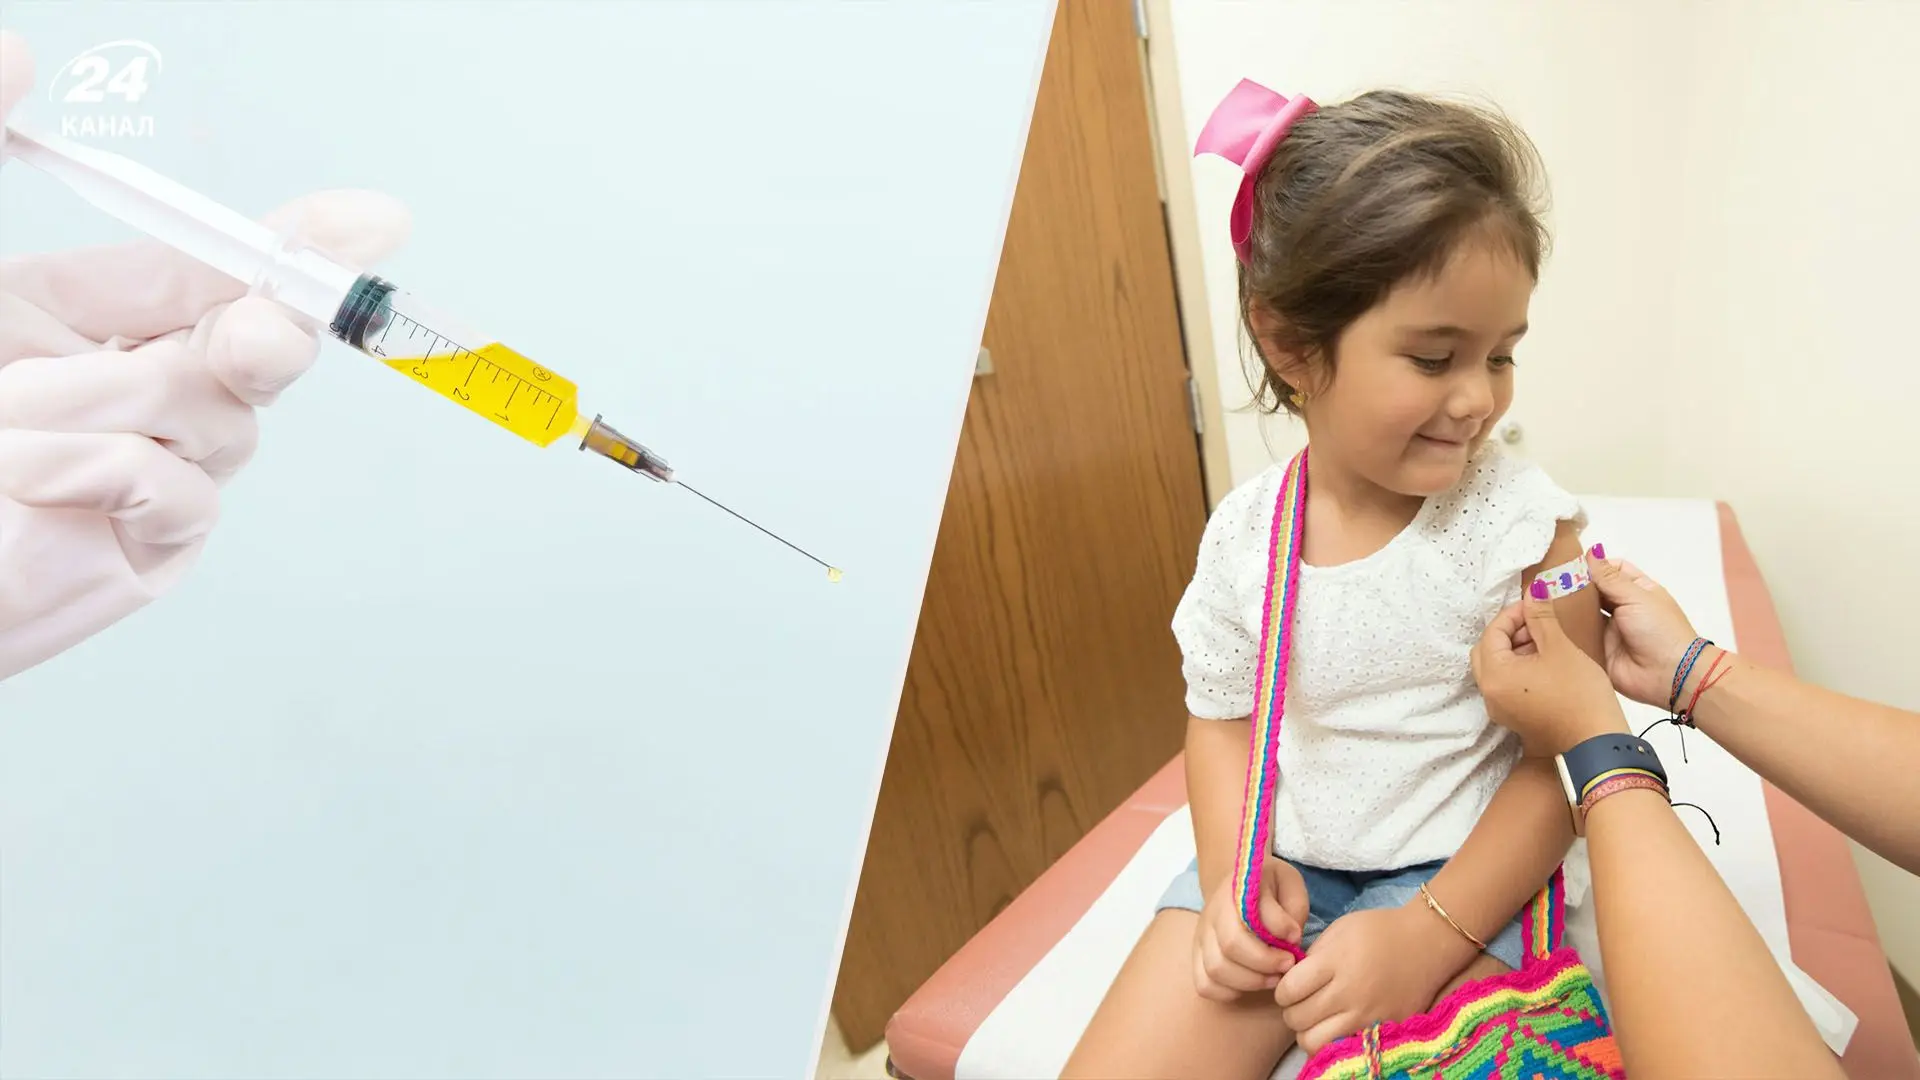 Що краще для здоров'я дитини: перехворіти чи вакцинуватись? Це питання варто розглядати з різних сторін.